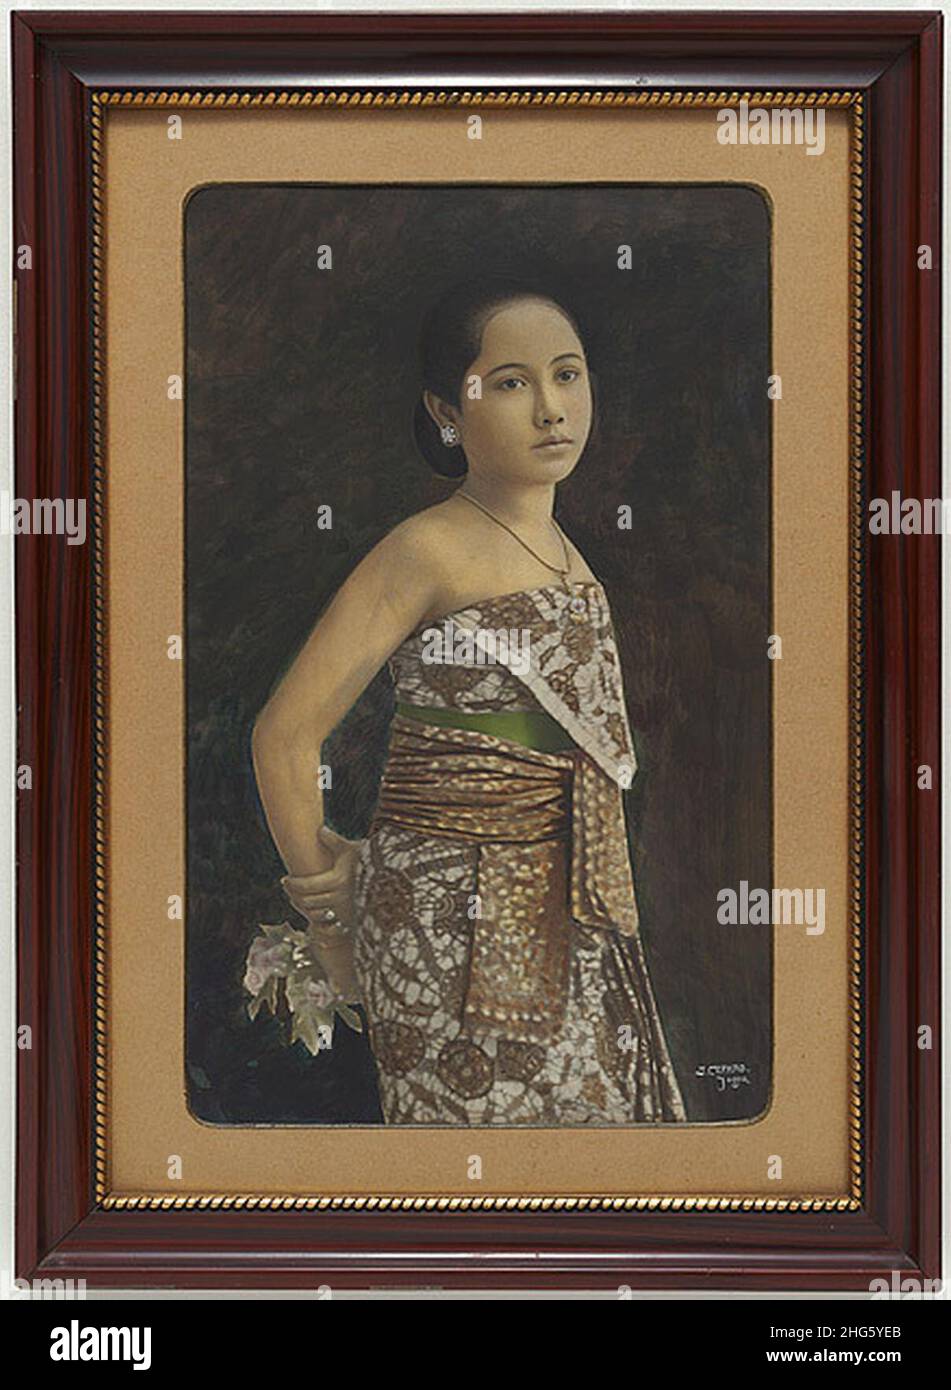 Sem Cephas - Portrait of a Javanese woman - 1900 Stock Photo